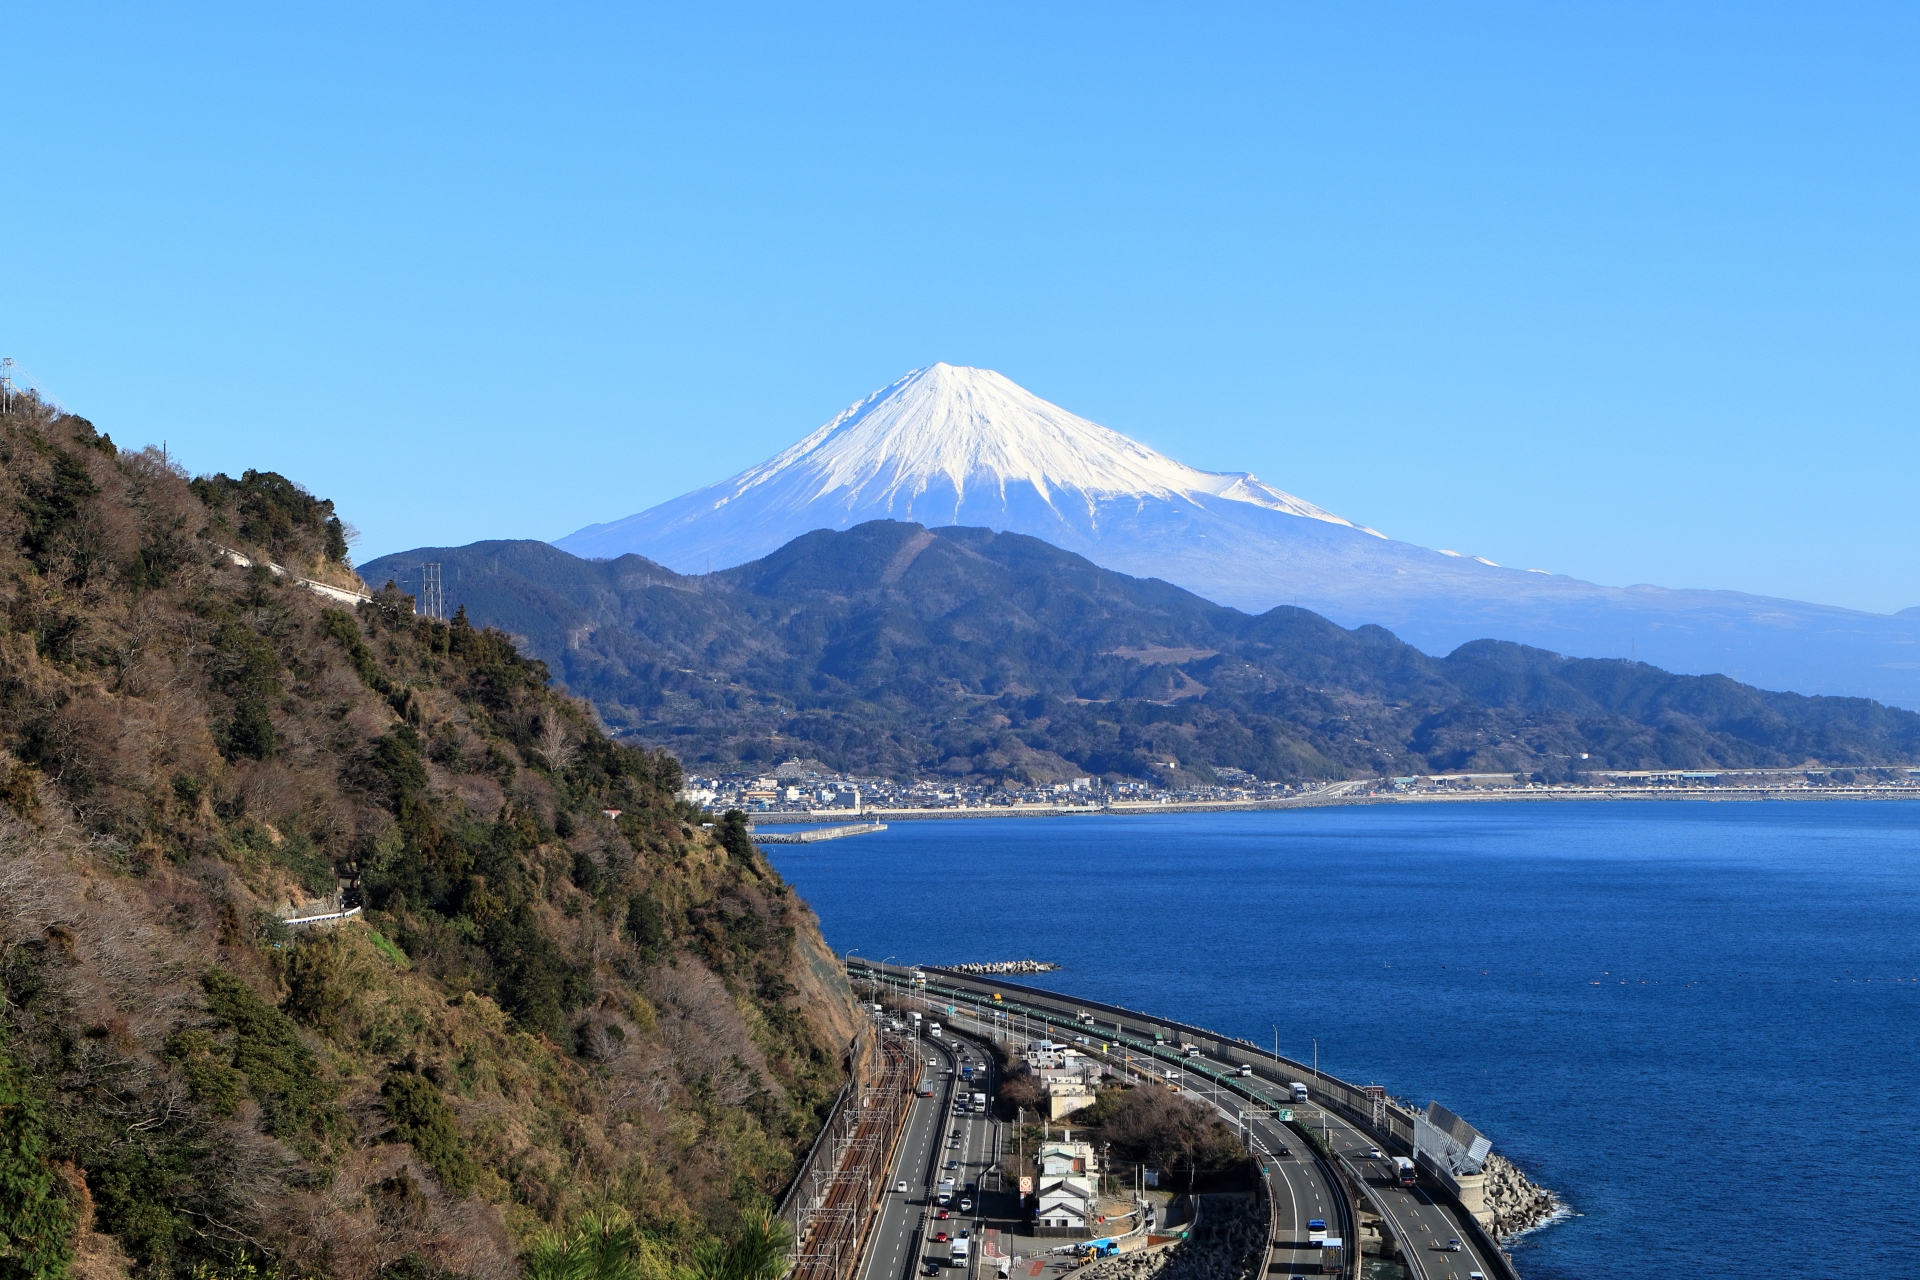 薩埵峠から見た富士山